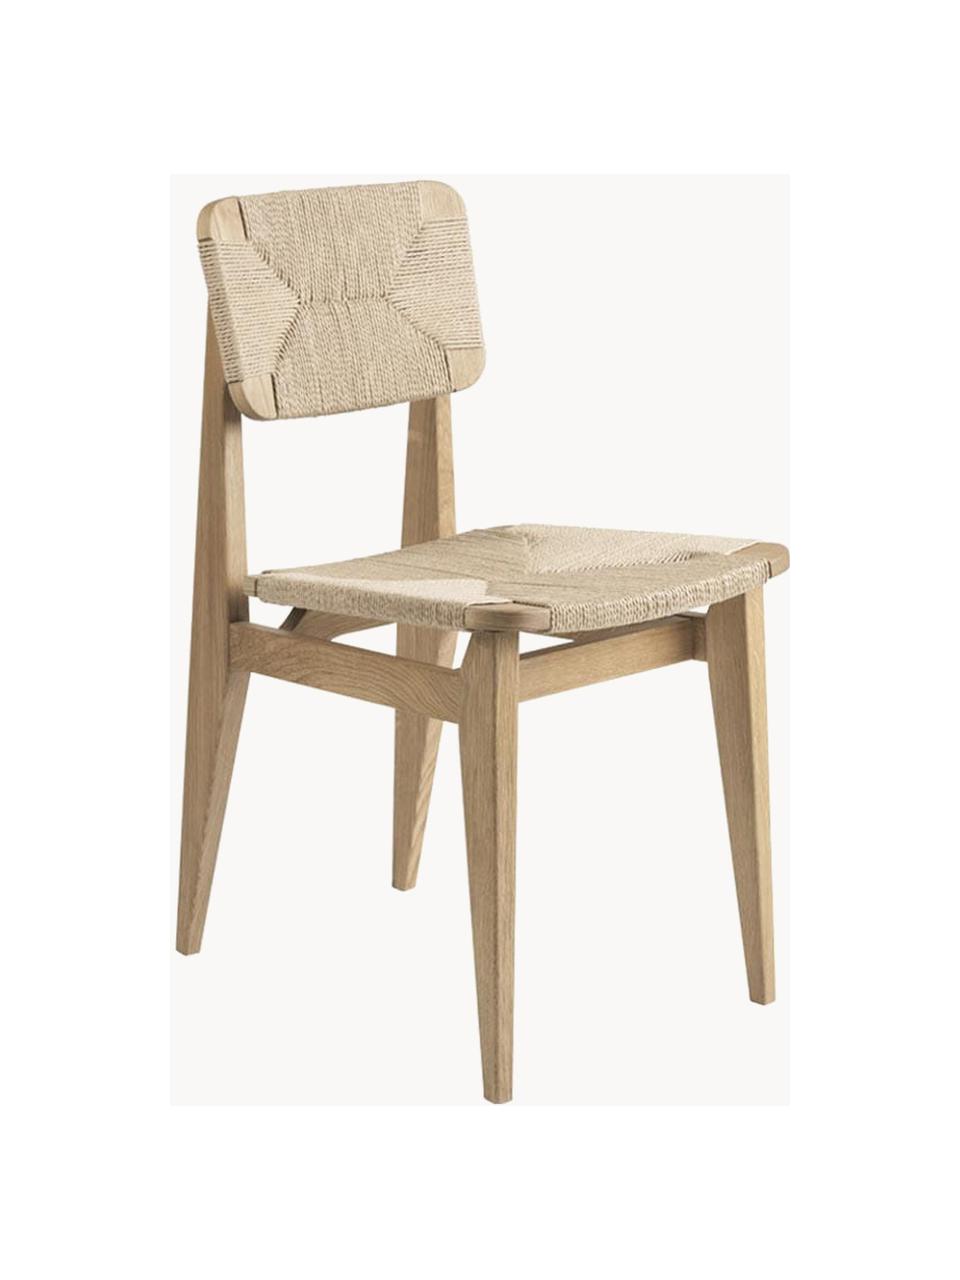 Sedia in legno in legno di quercia con seduta intrecciata C-Chair, Struttura: legno di quercia oliato, Legno chiaro, beige chiaro, Larg. 41 x Prof. 53 cm